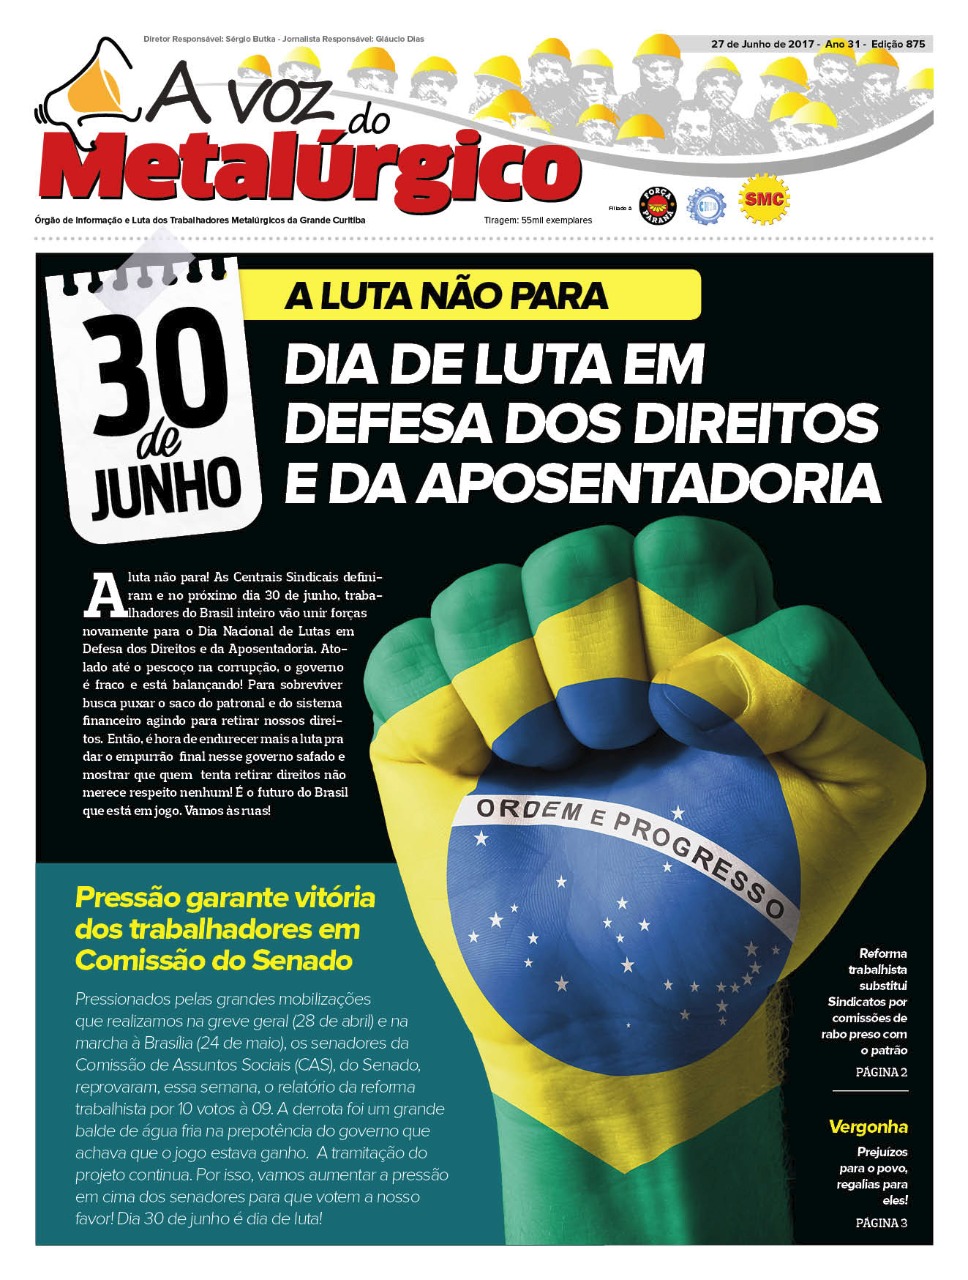 Nova edição do jornal dos metalúrgicos da Grande Curitiba destaca a luta do dia 30 de junho